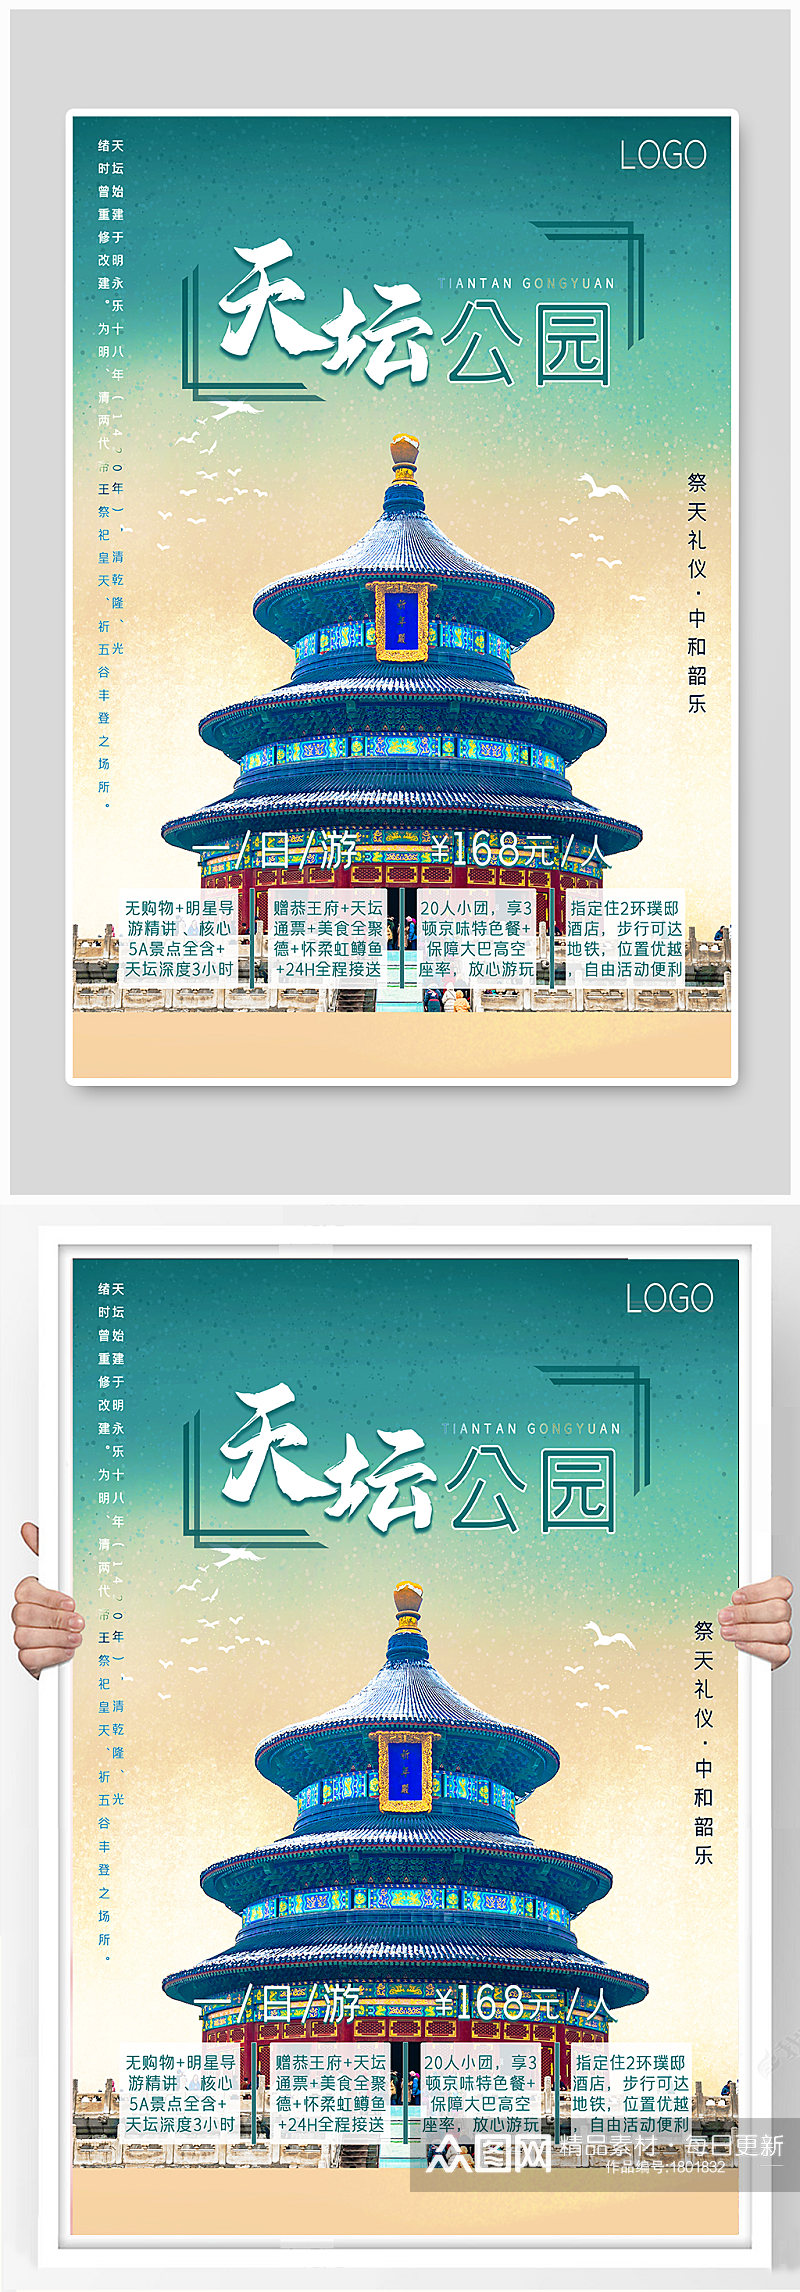 北京之天坛公园旅游海报素材